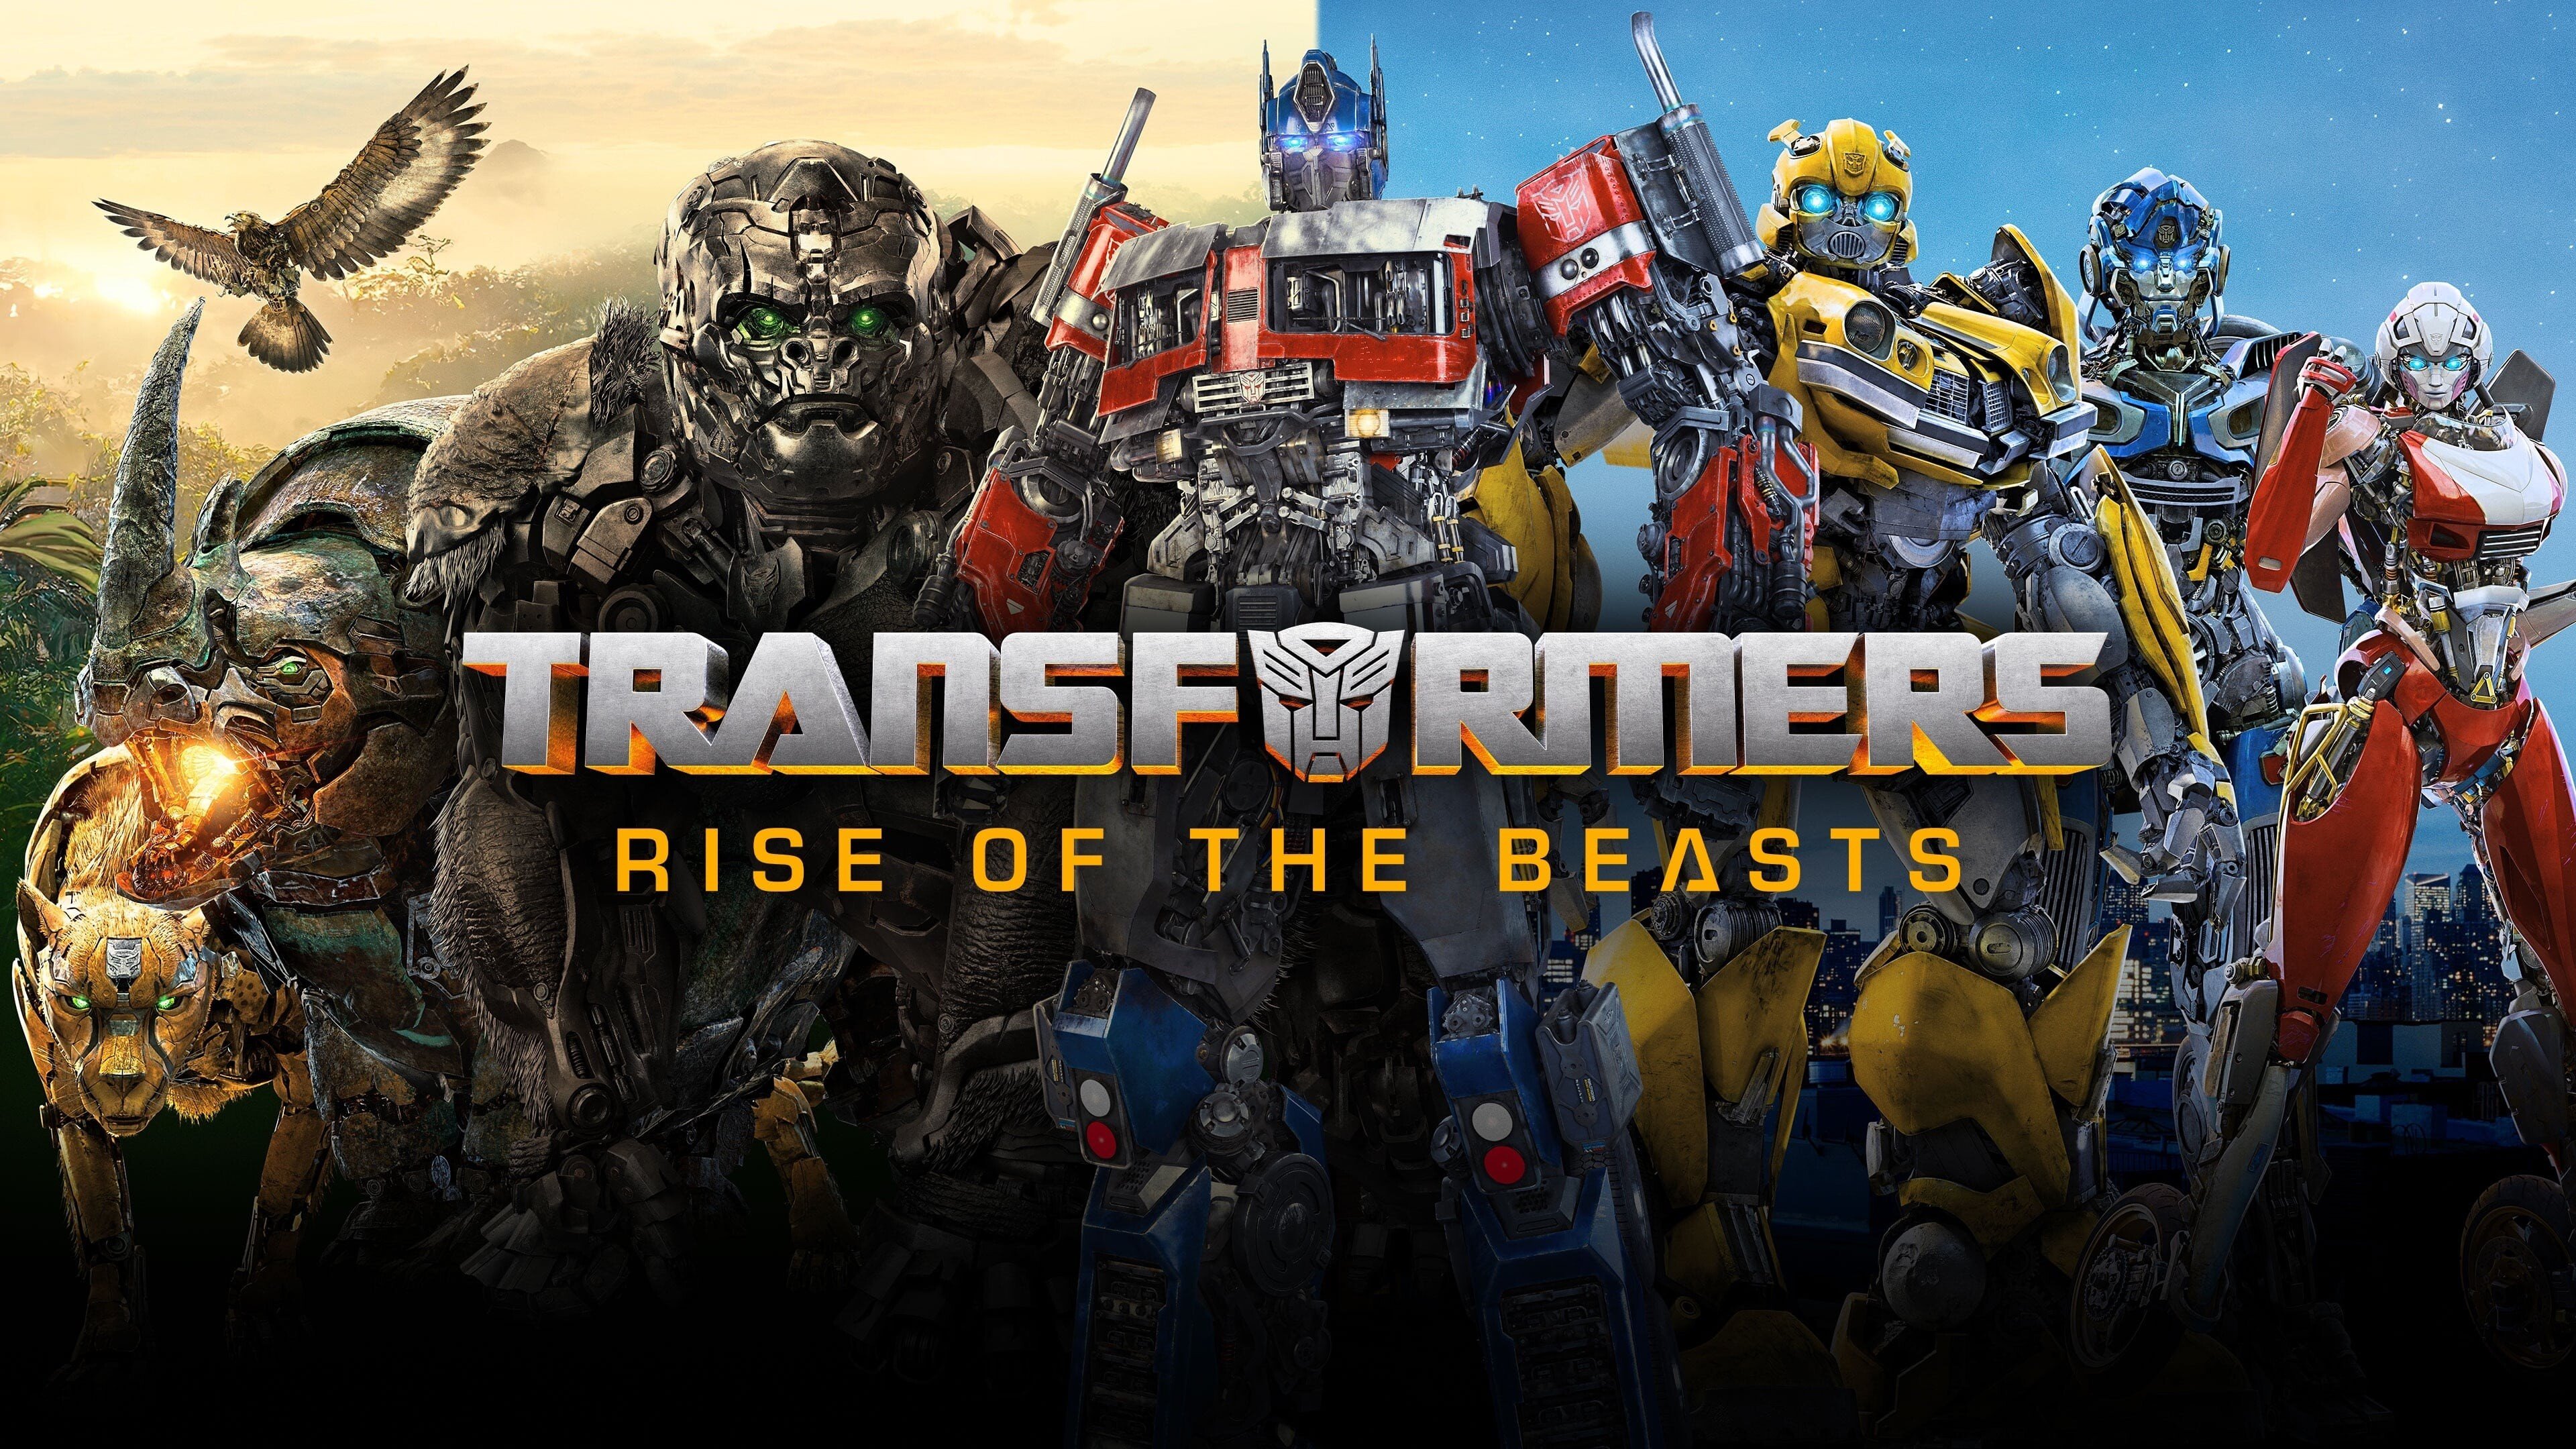 Transformerlar 4. Transformers восхождение звероботов. Трансформеры 6 восхождение звероботов. Трансформеры 7 восхождение звероботов.